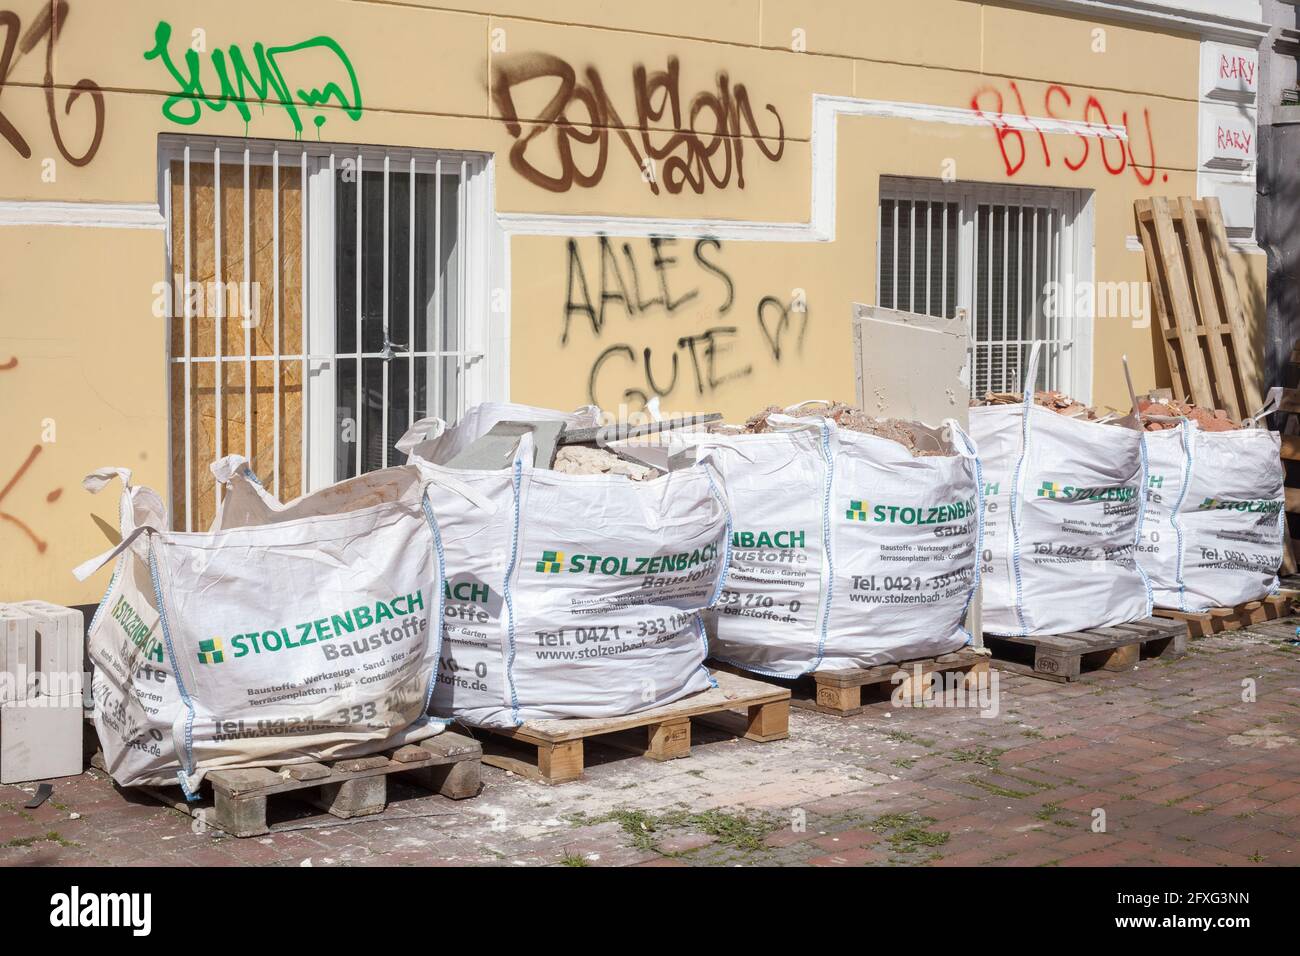 Sacchi di spazzatura riempiti di macerie in piedi per strada, Germania, Europa Foto Stock